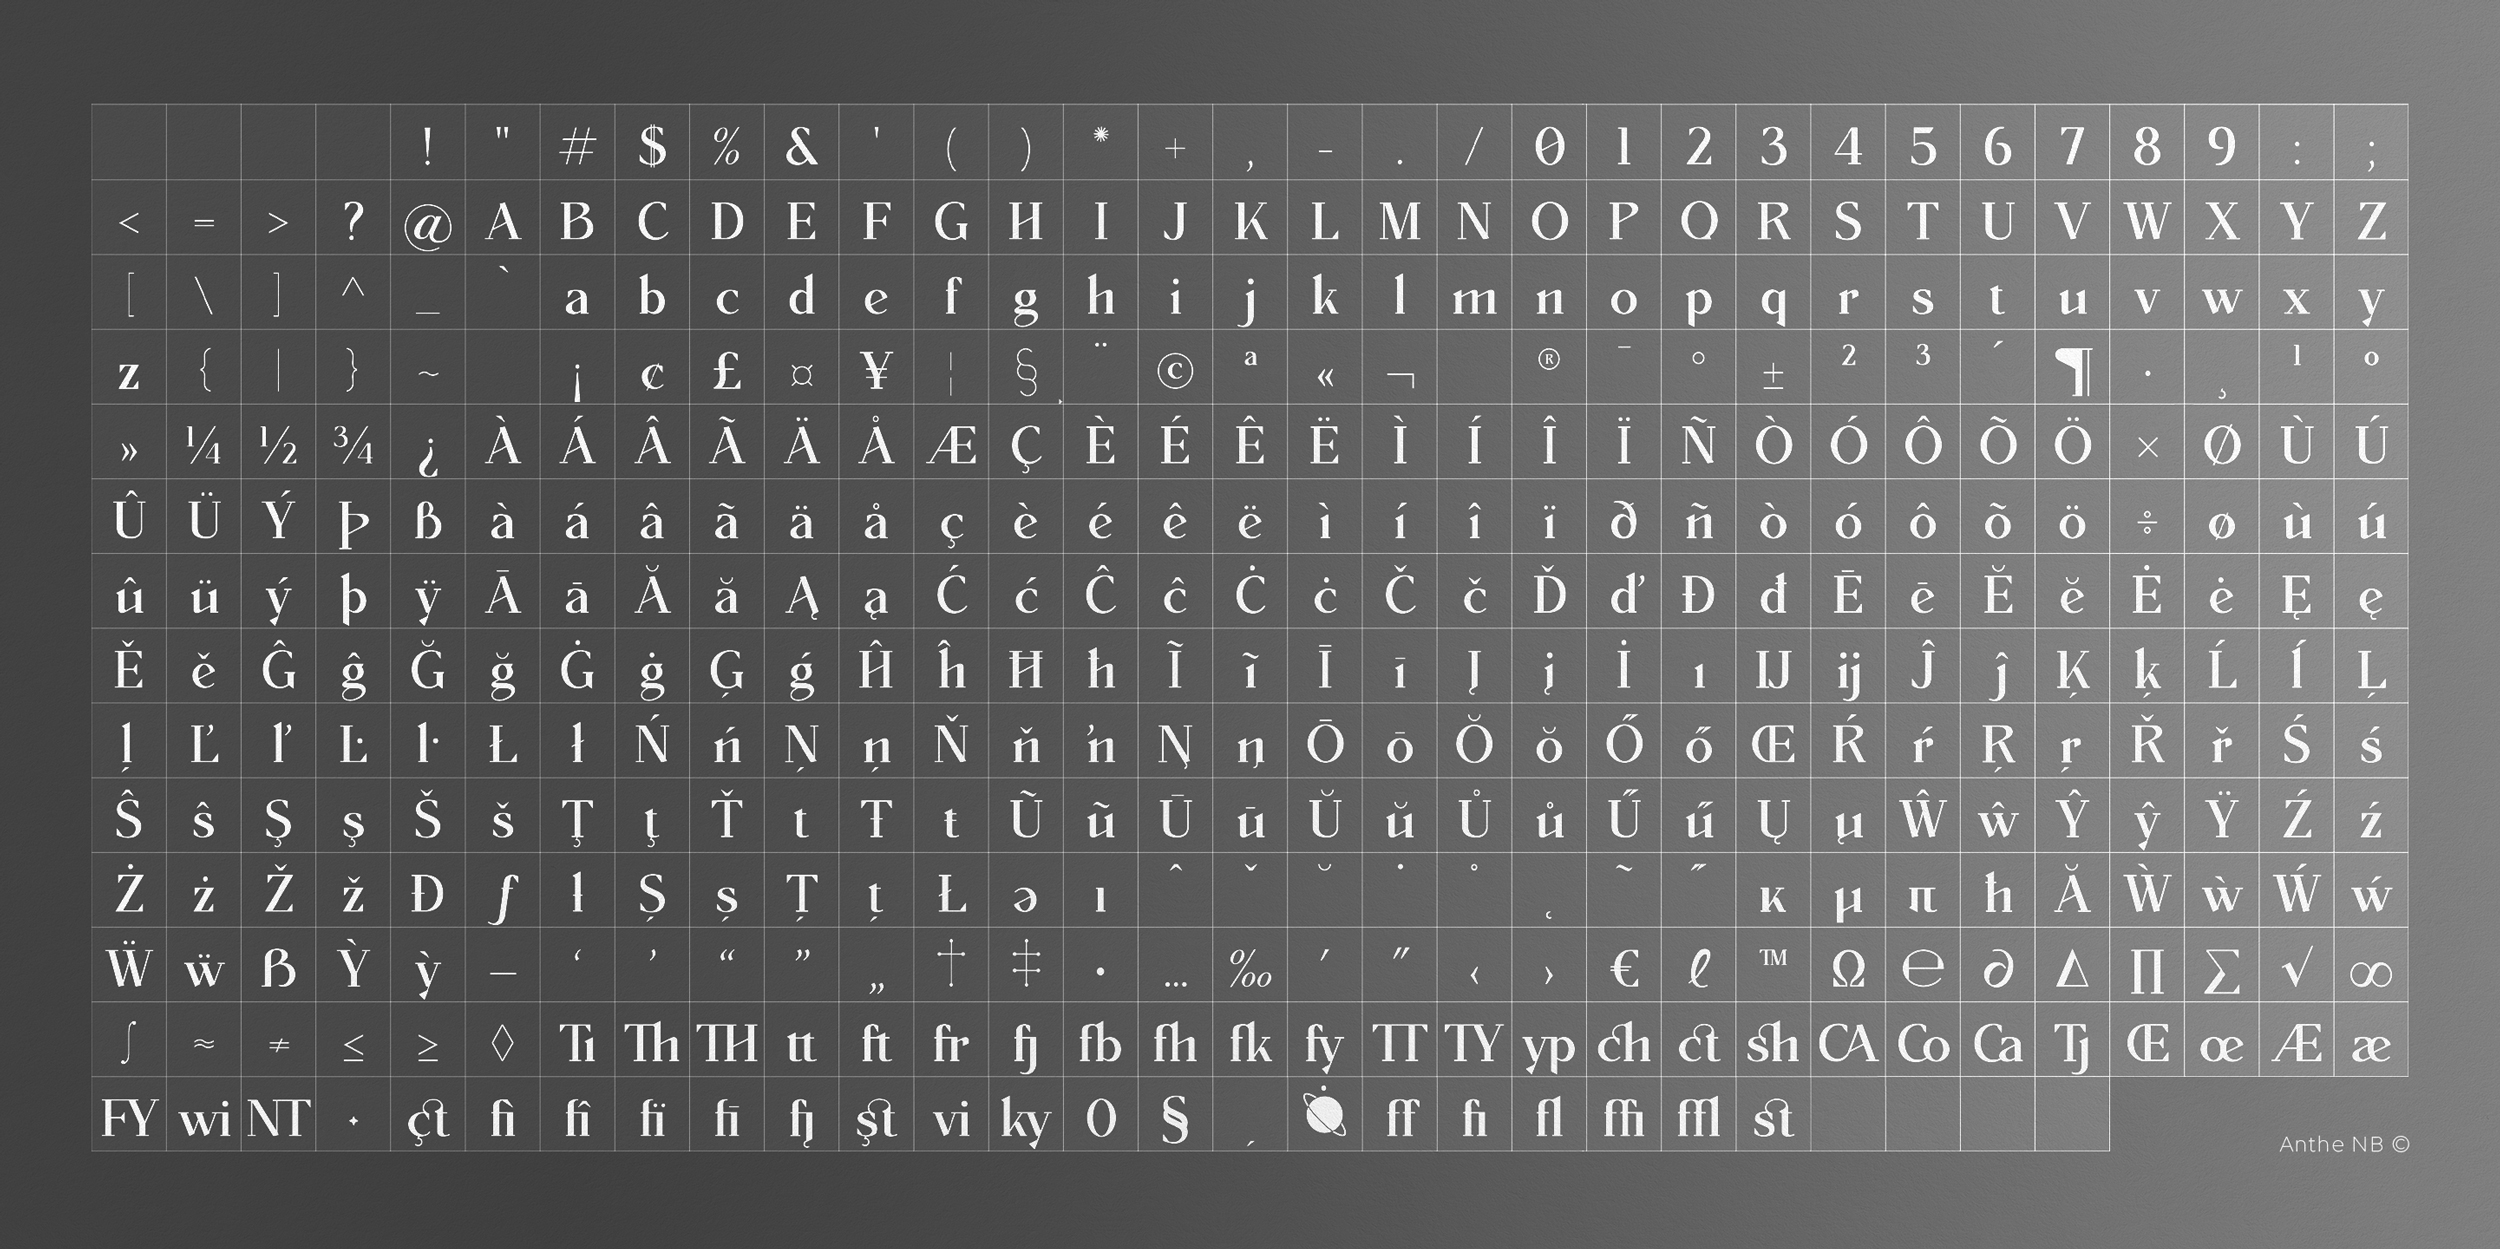 Omecara-Anthe-NB-Regular-Typeface-design-homepage-14